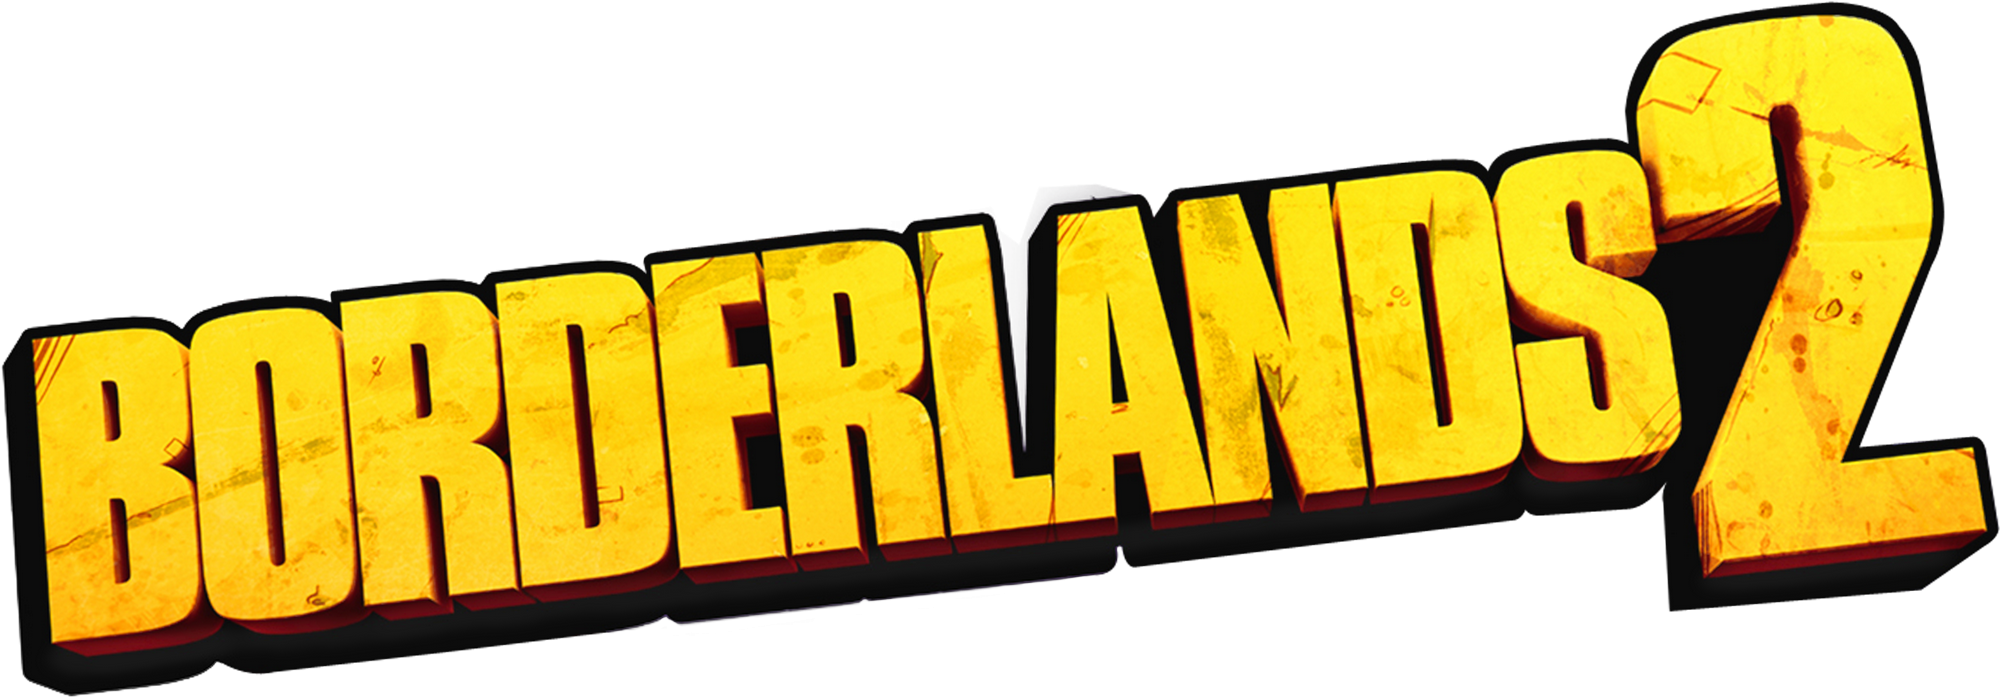 دانلود بازی Borderlands 2 برای کامپیوتر | گیمباتو 